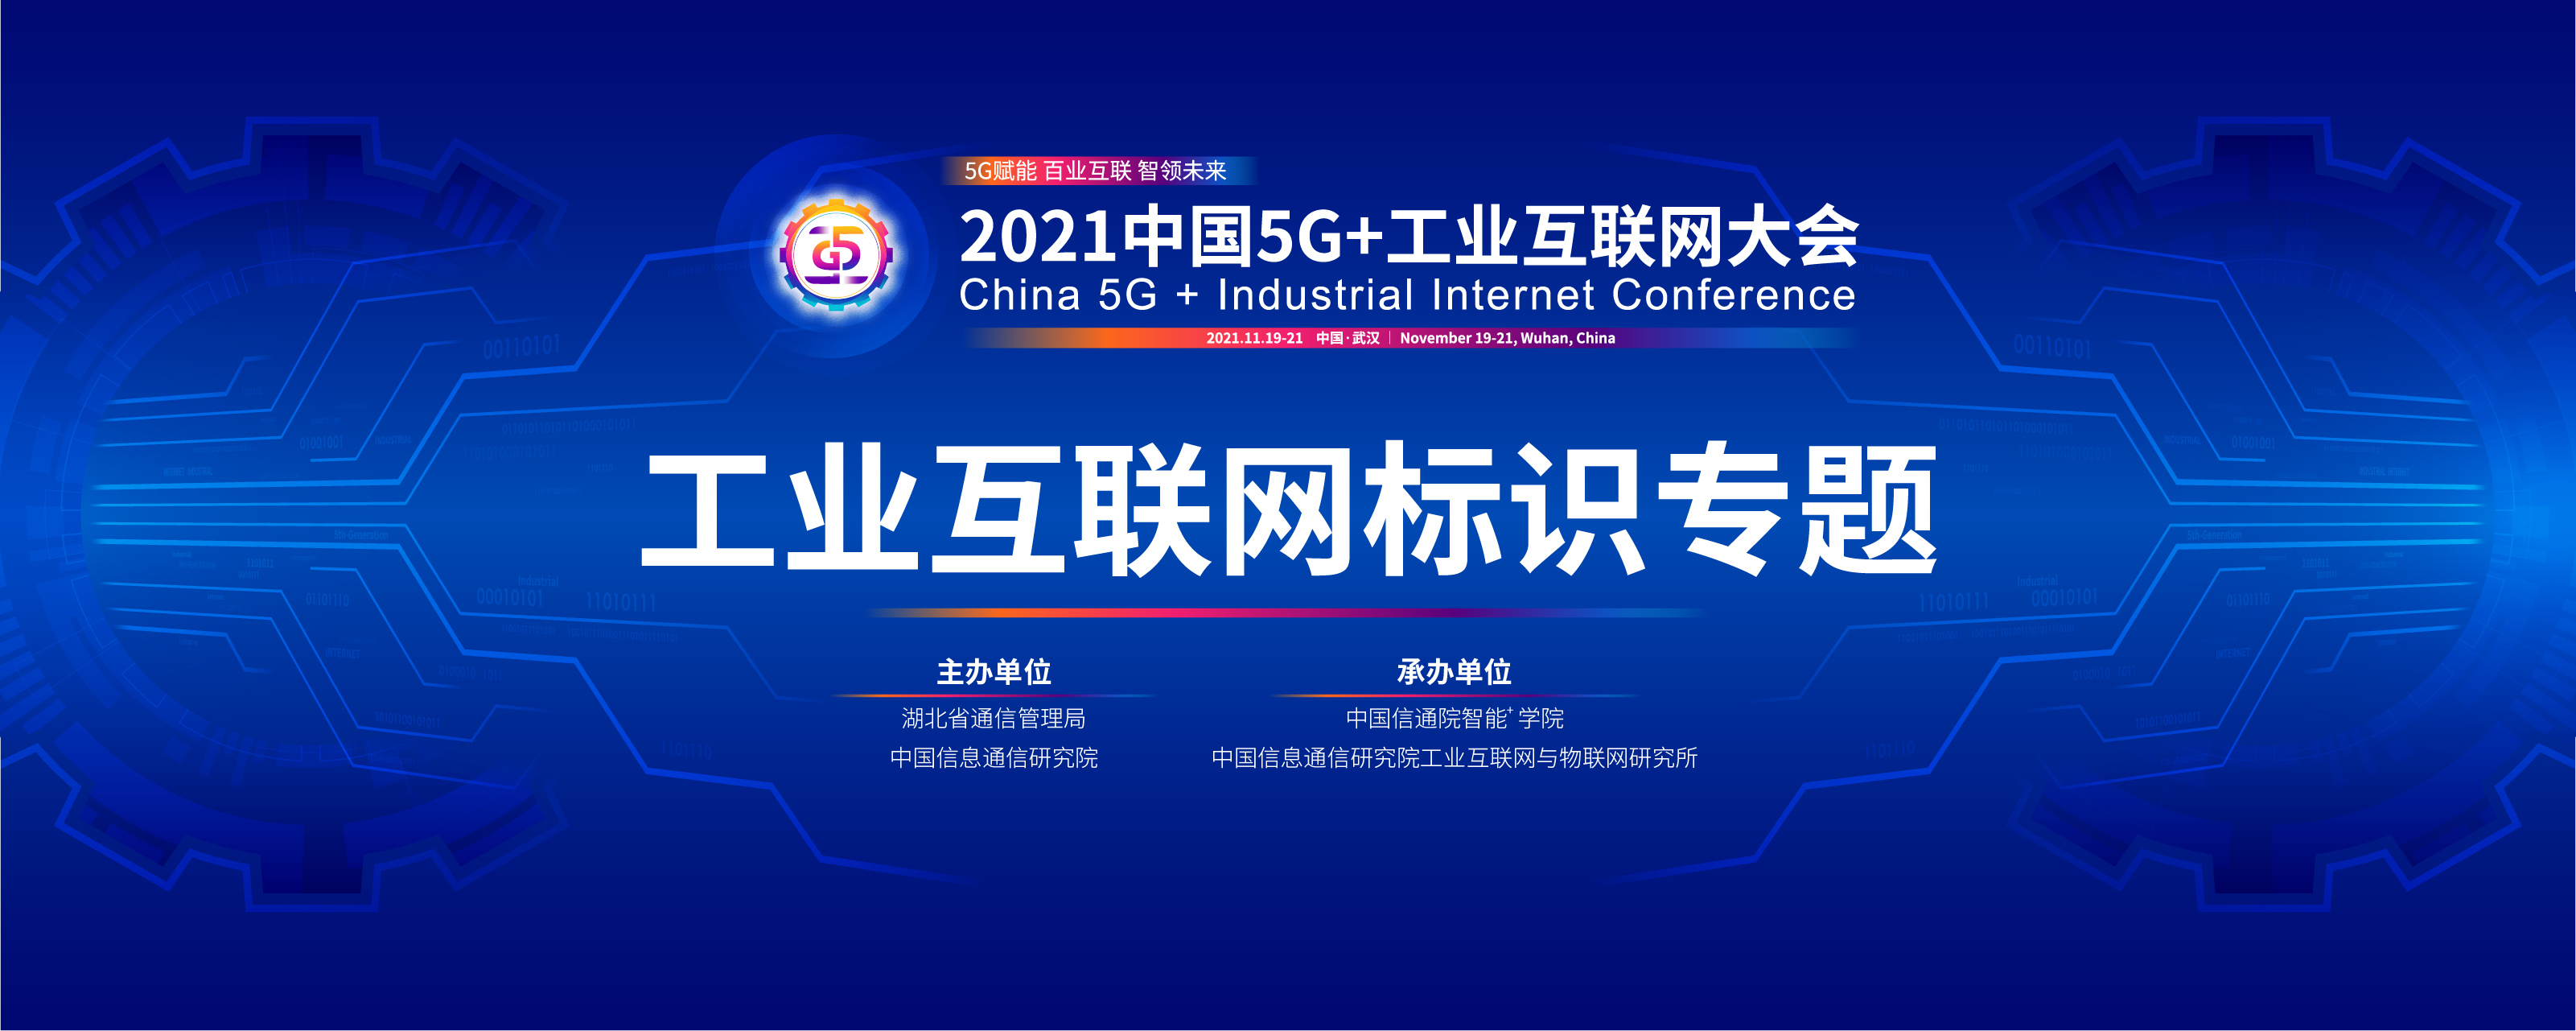 2021中国5G+工业互联网大会“工业互联网标识”专题会议将于11月21日下午召开